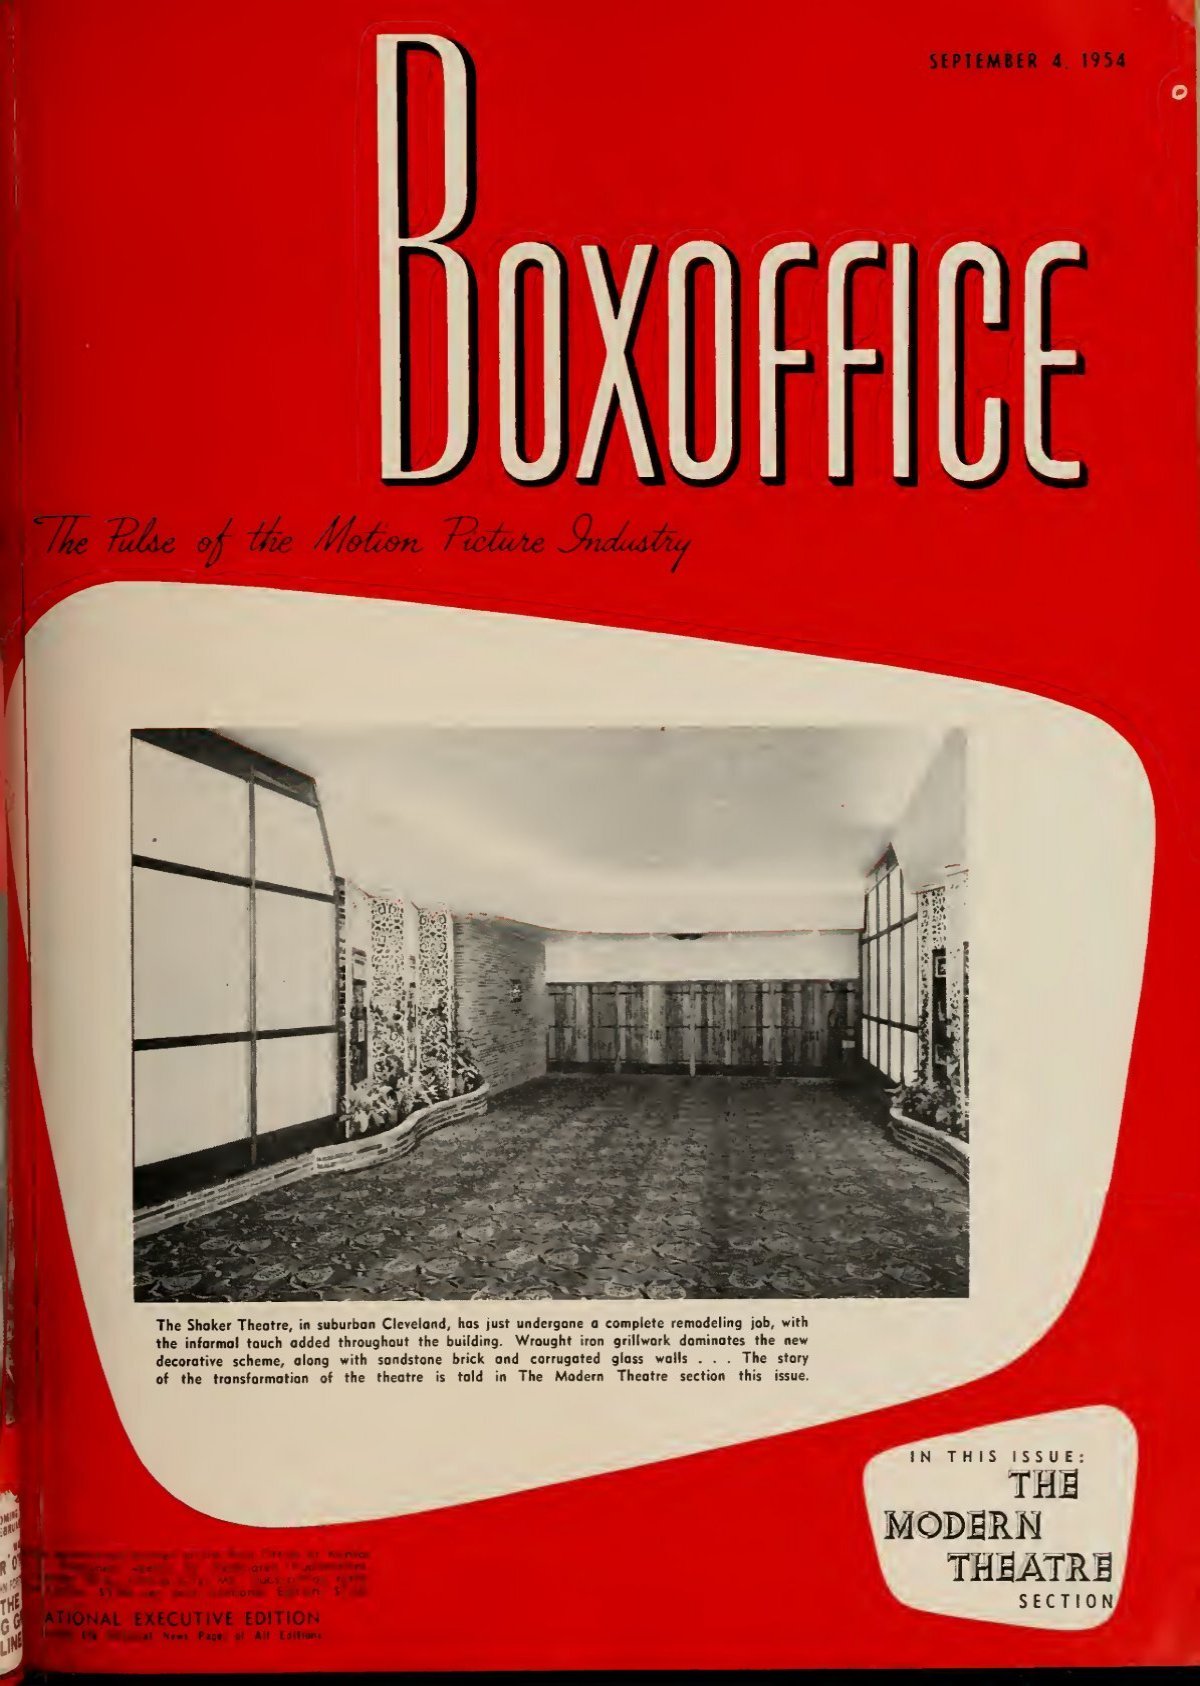 Boxoffice-September.04.1954